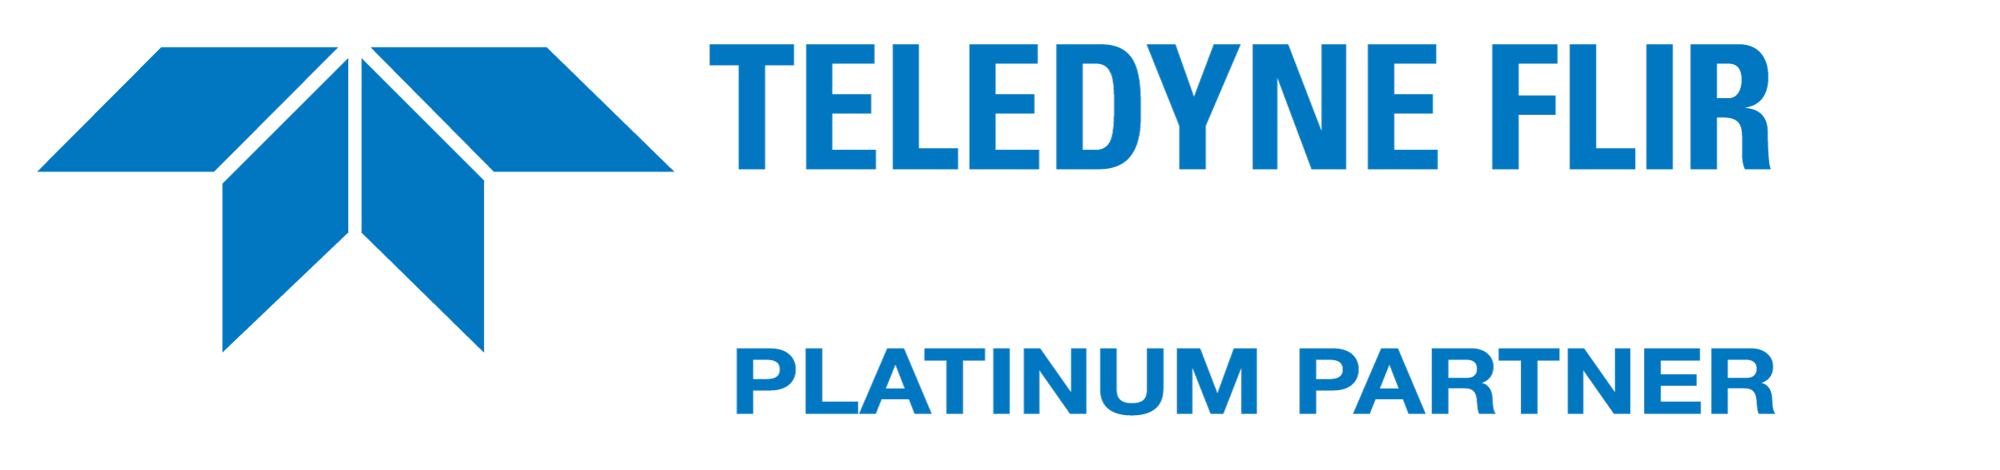 TeledyneFLIR_PP_Logo_Blue